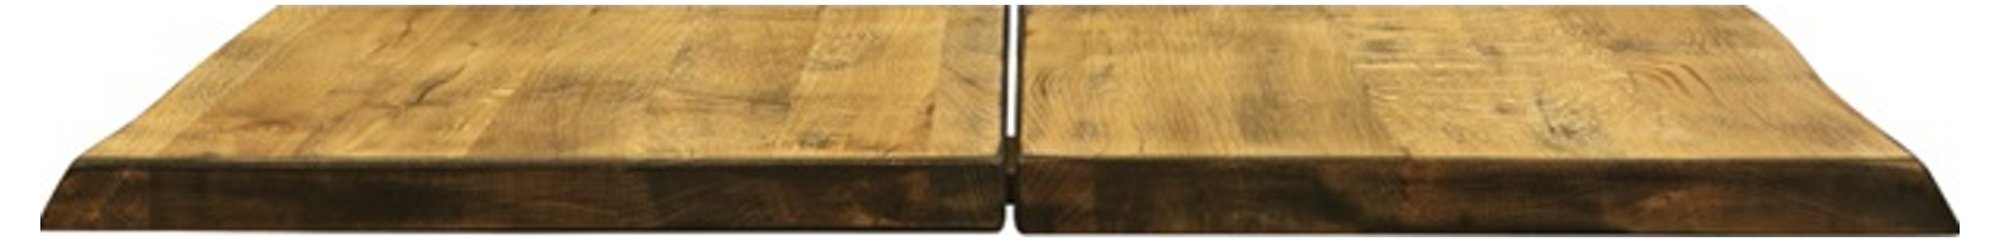 Hugin, Tillægsplade til Hugin plankebord, Egetræ by House of Sander (H: 4 cm. B: 103 cm. L: 50 cm., Vintage)